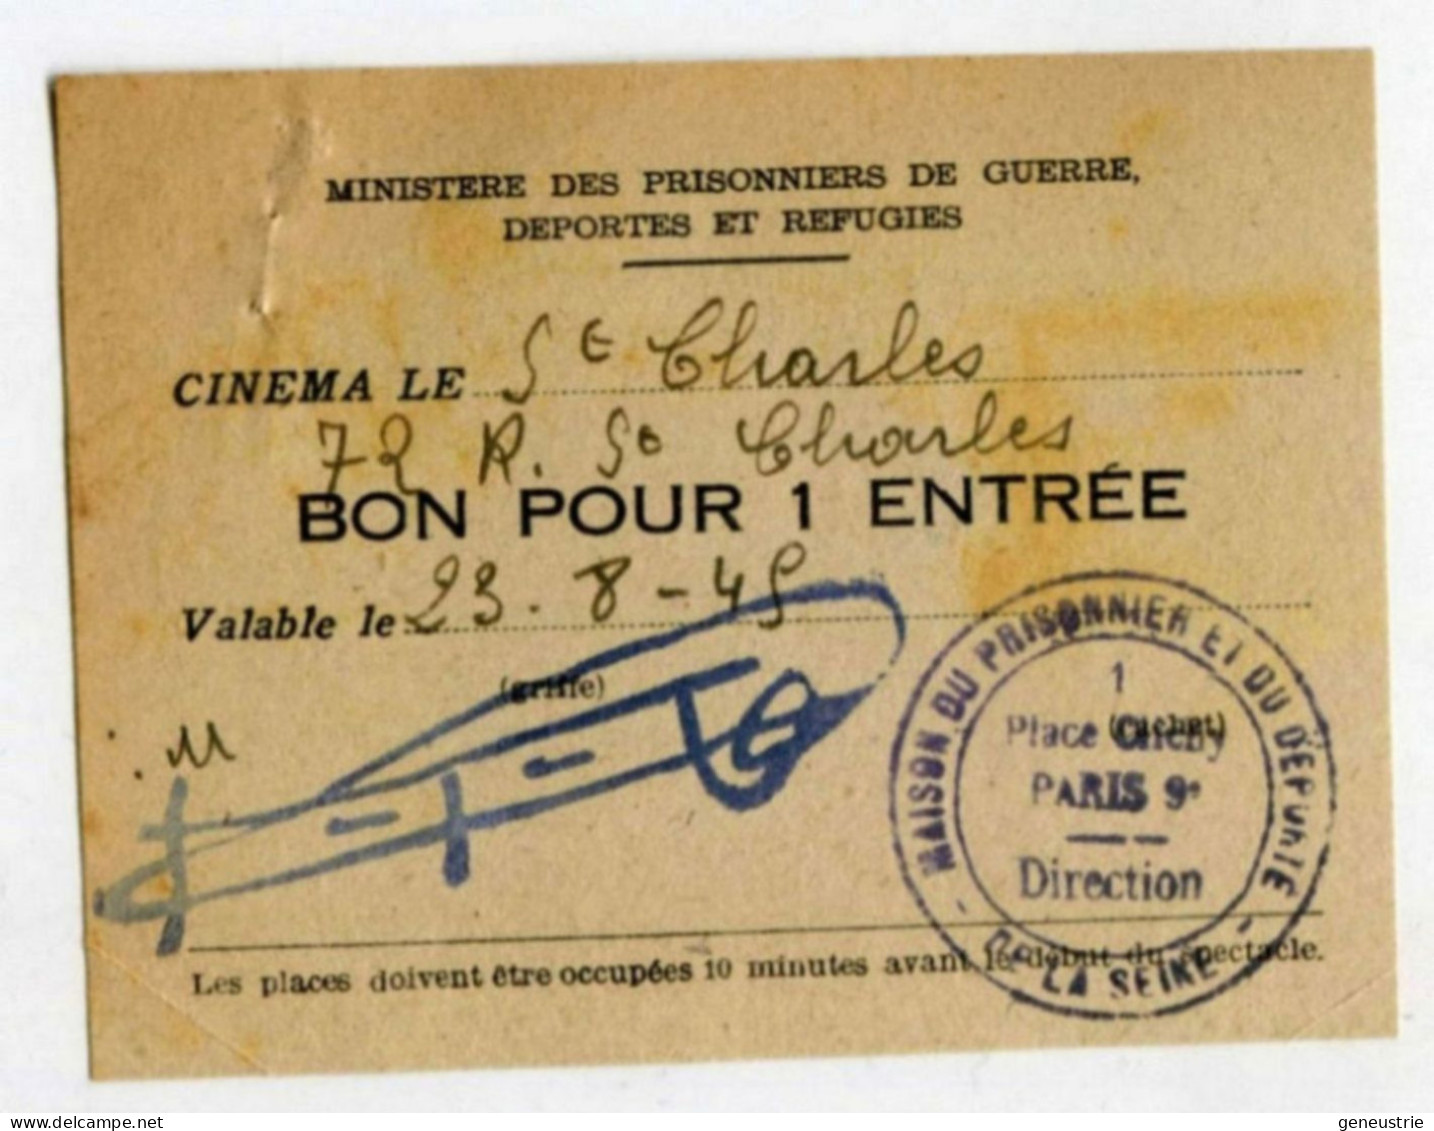 WW2 Bon De Nécessité "Bon Pour 1 Entrée" Ticket Cinéma St Charles - Maison Du Prisonnier Et Du Déporté - WWII - Monedas / De Necesidad